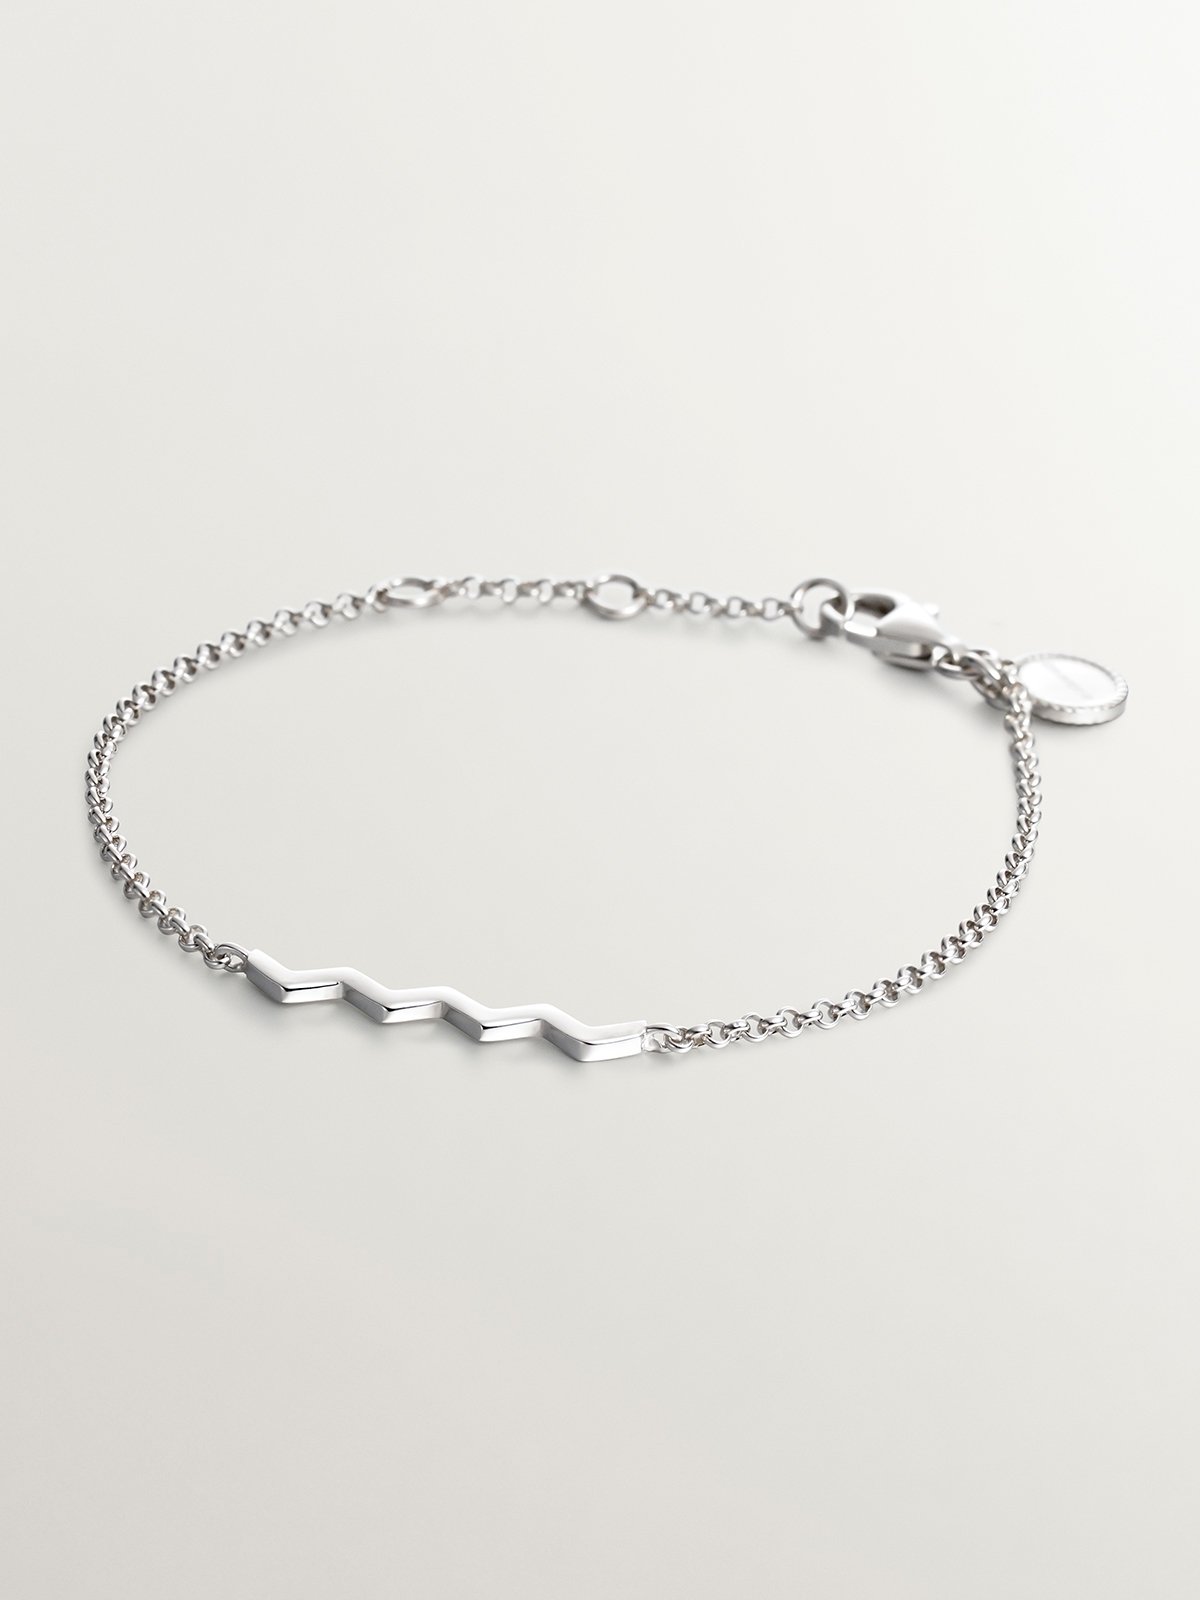 925 Silver bracelet with zigzag